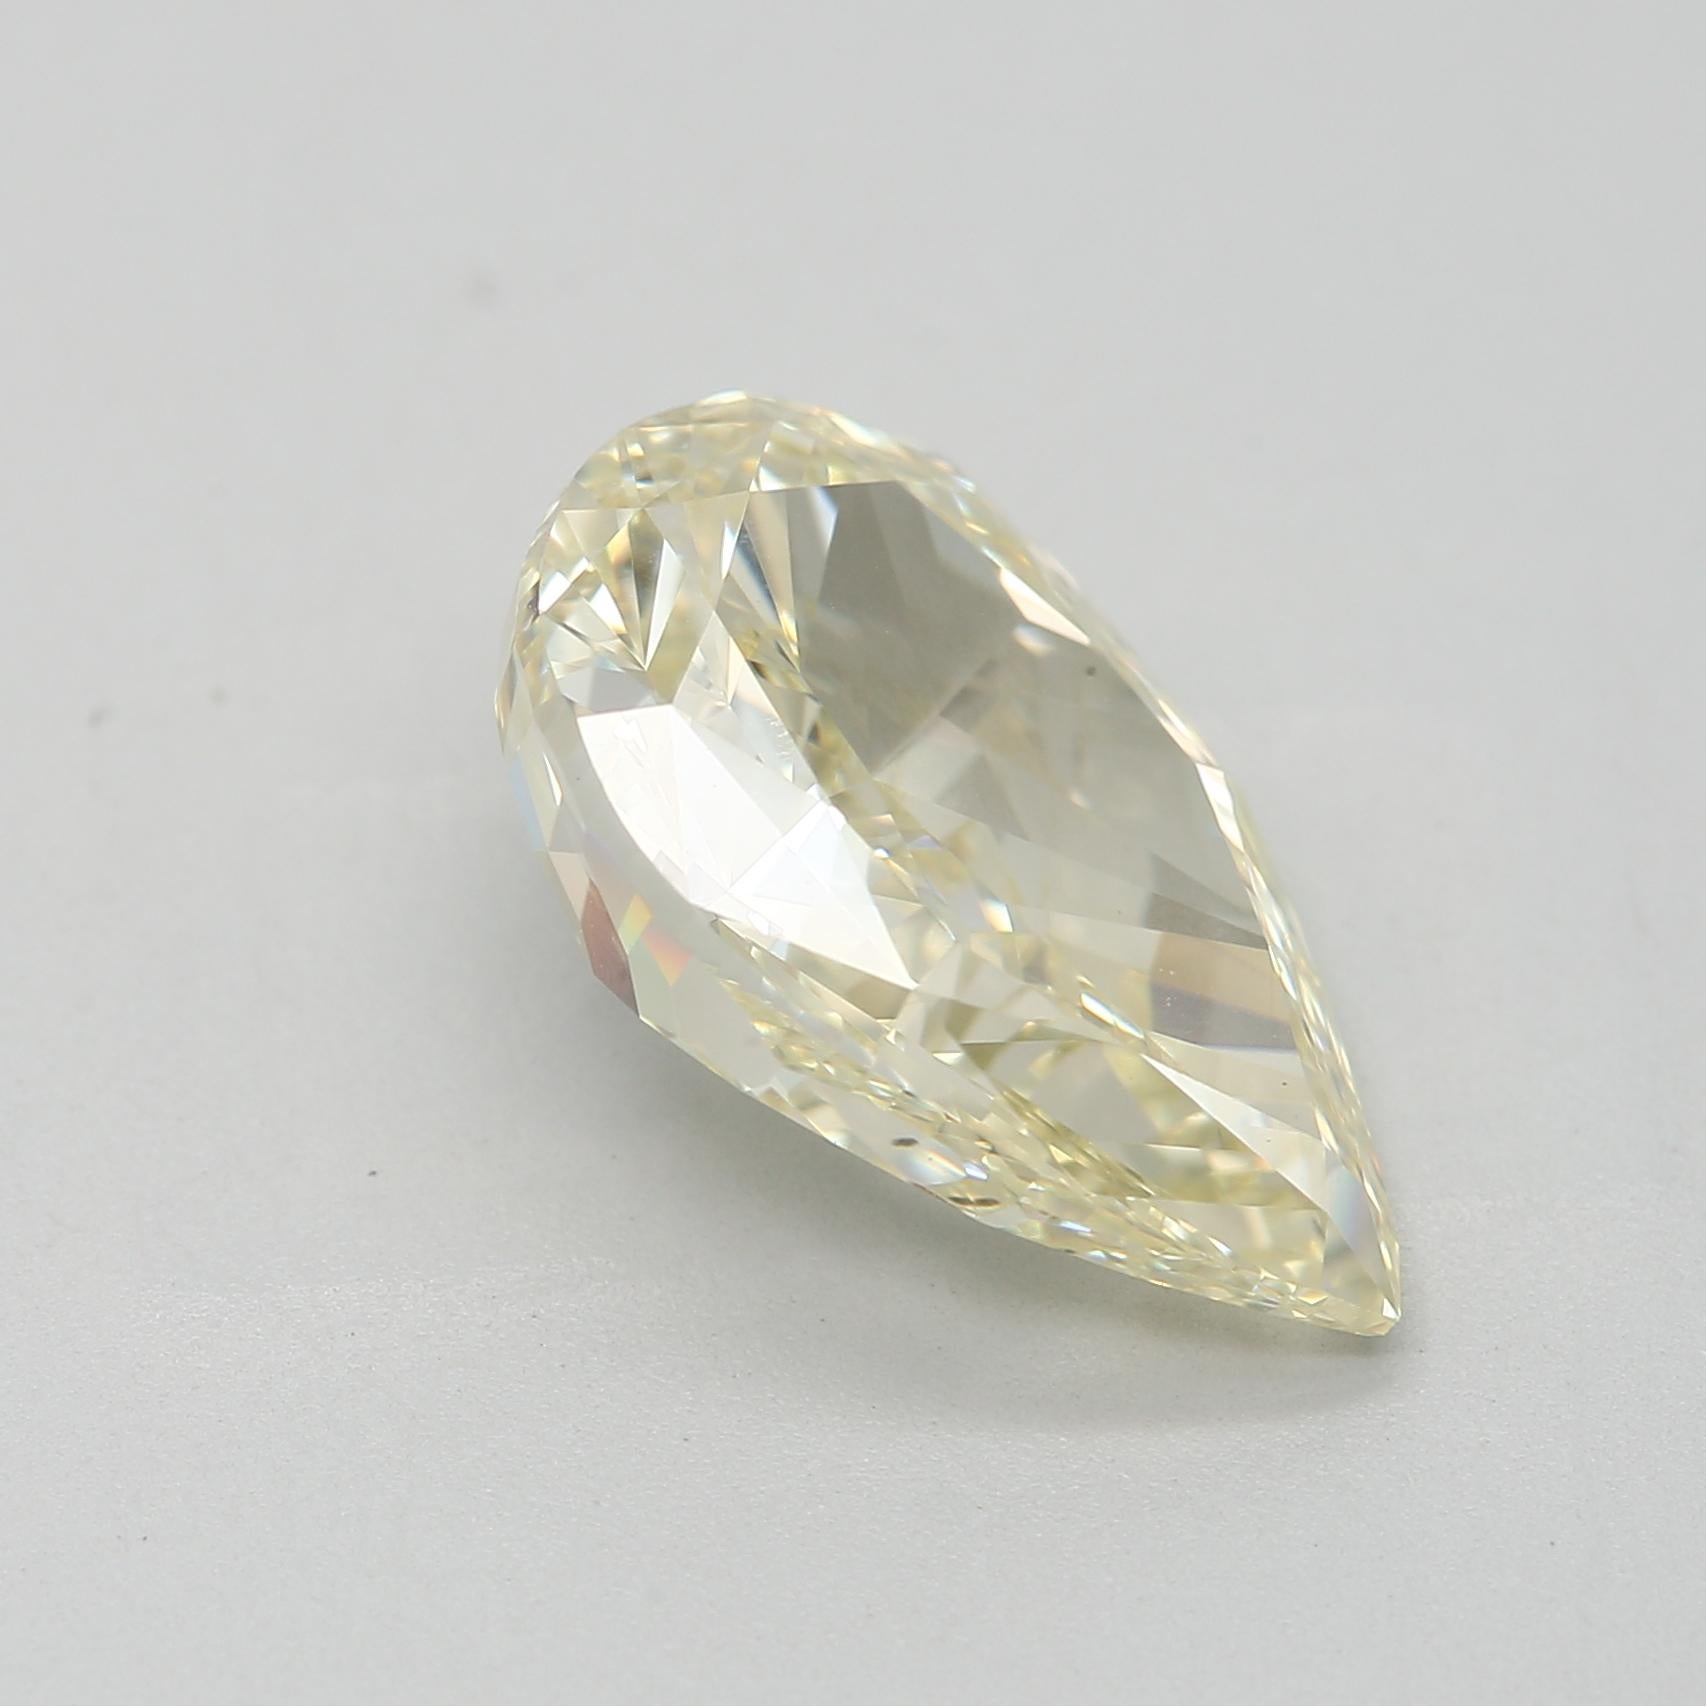  Diamant jaune clair fantaisie de 3,19 carats de taille poire de pureté VS1 certifié GIA  Unisexe 